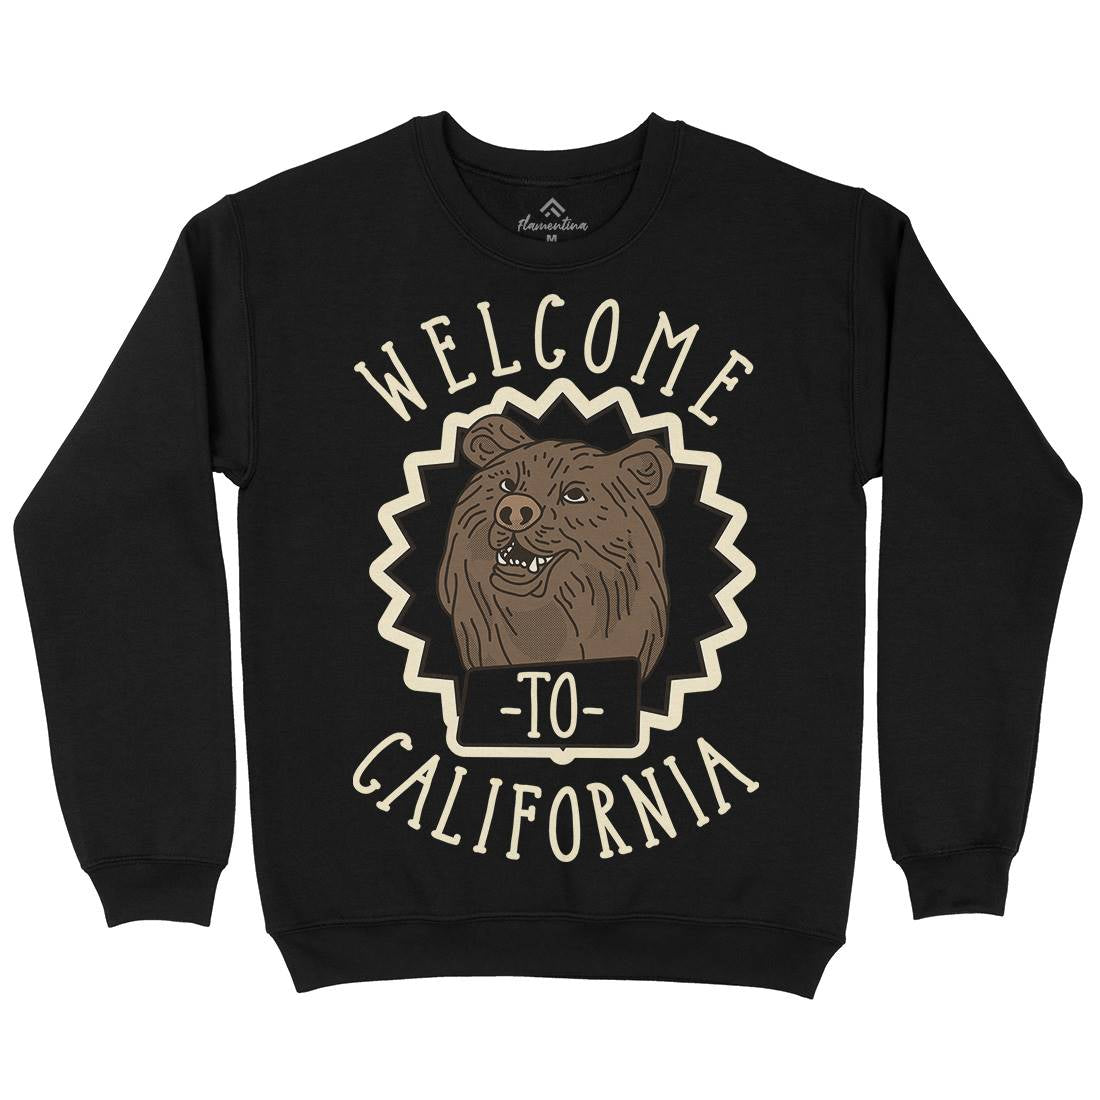 Welcome To California Mens Crew Neck Sweatshirt Animals D997